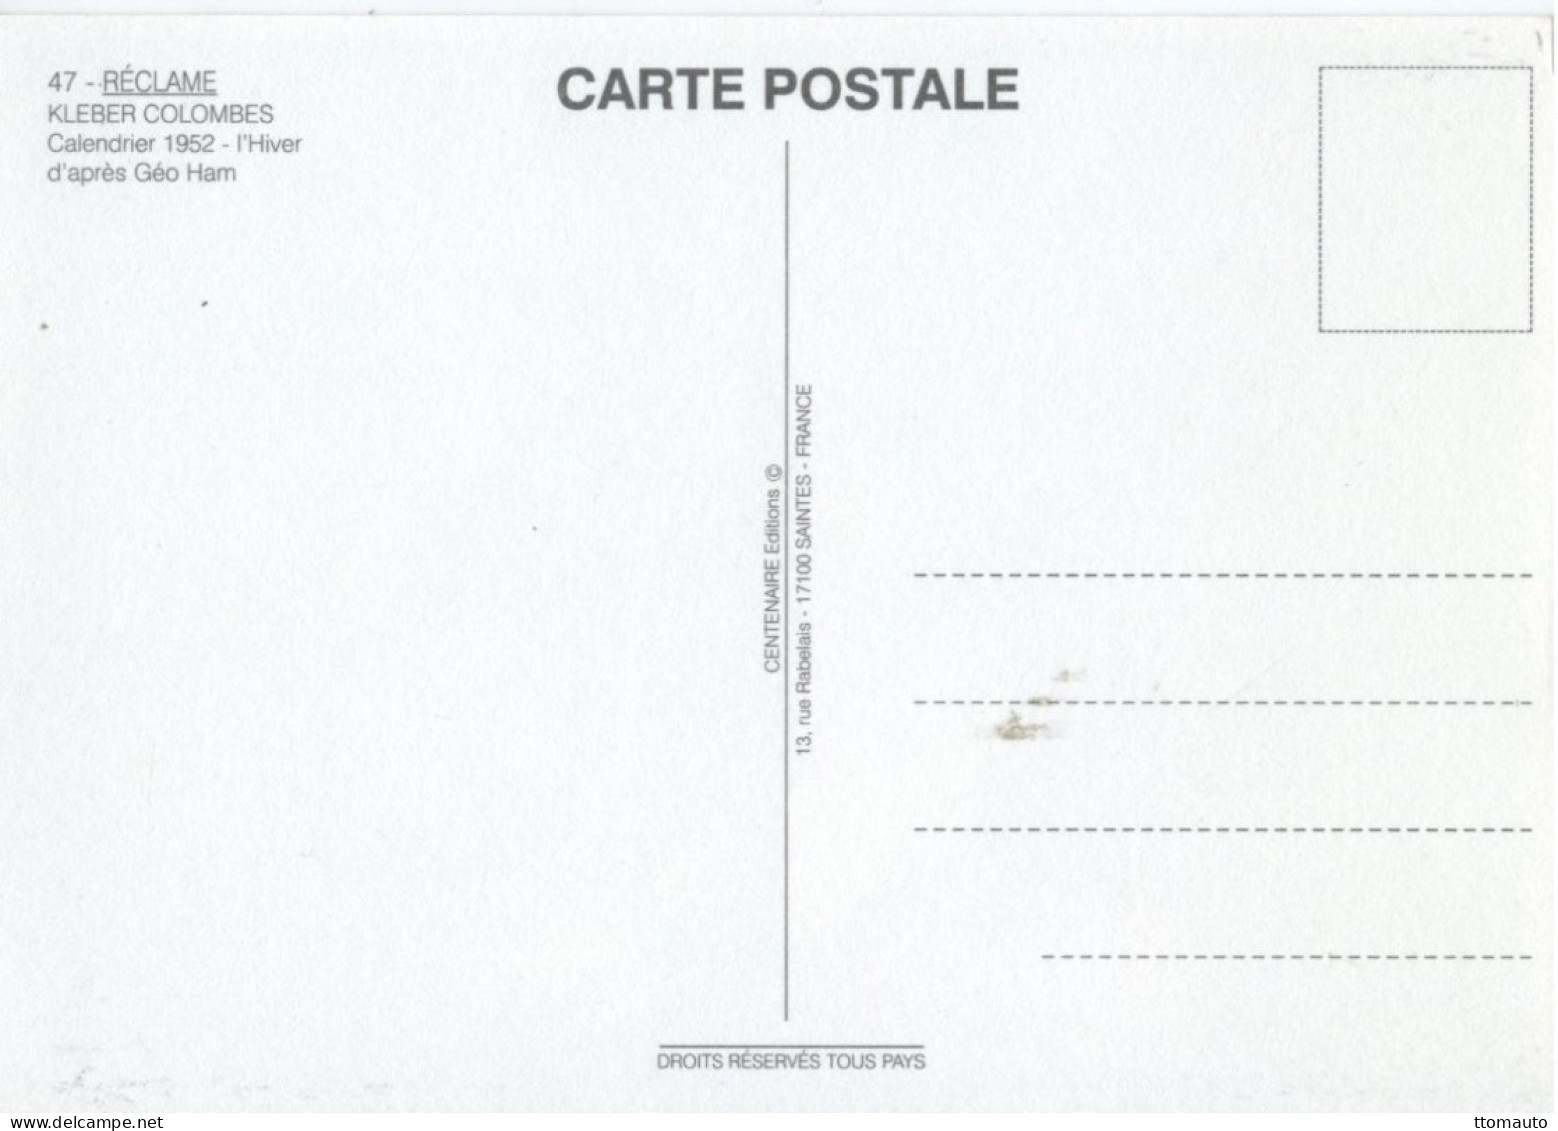 Kleber-Colombes - Repro Affiche Pour Pneumatiques Et Caoutchouc Manufacture 1952 - Artiste: Géo Ham  - Carte Postale - Voitures De Tourisme